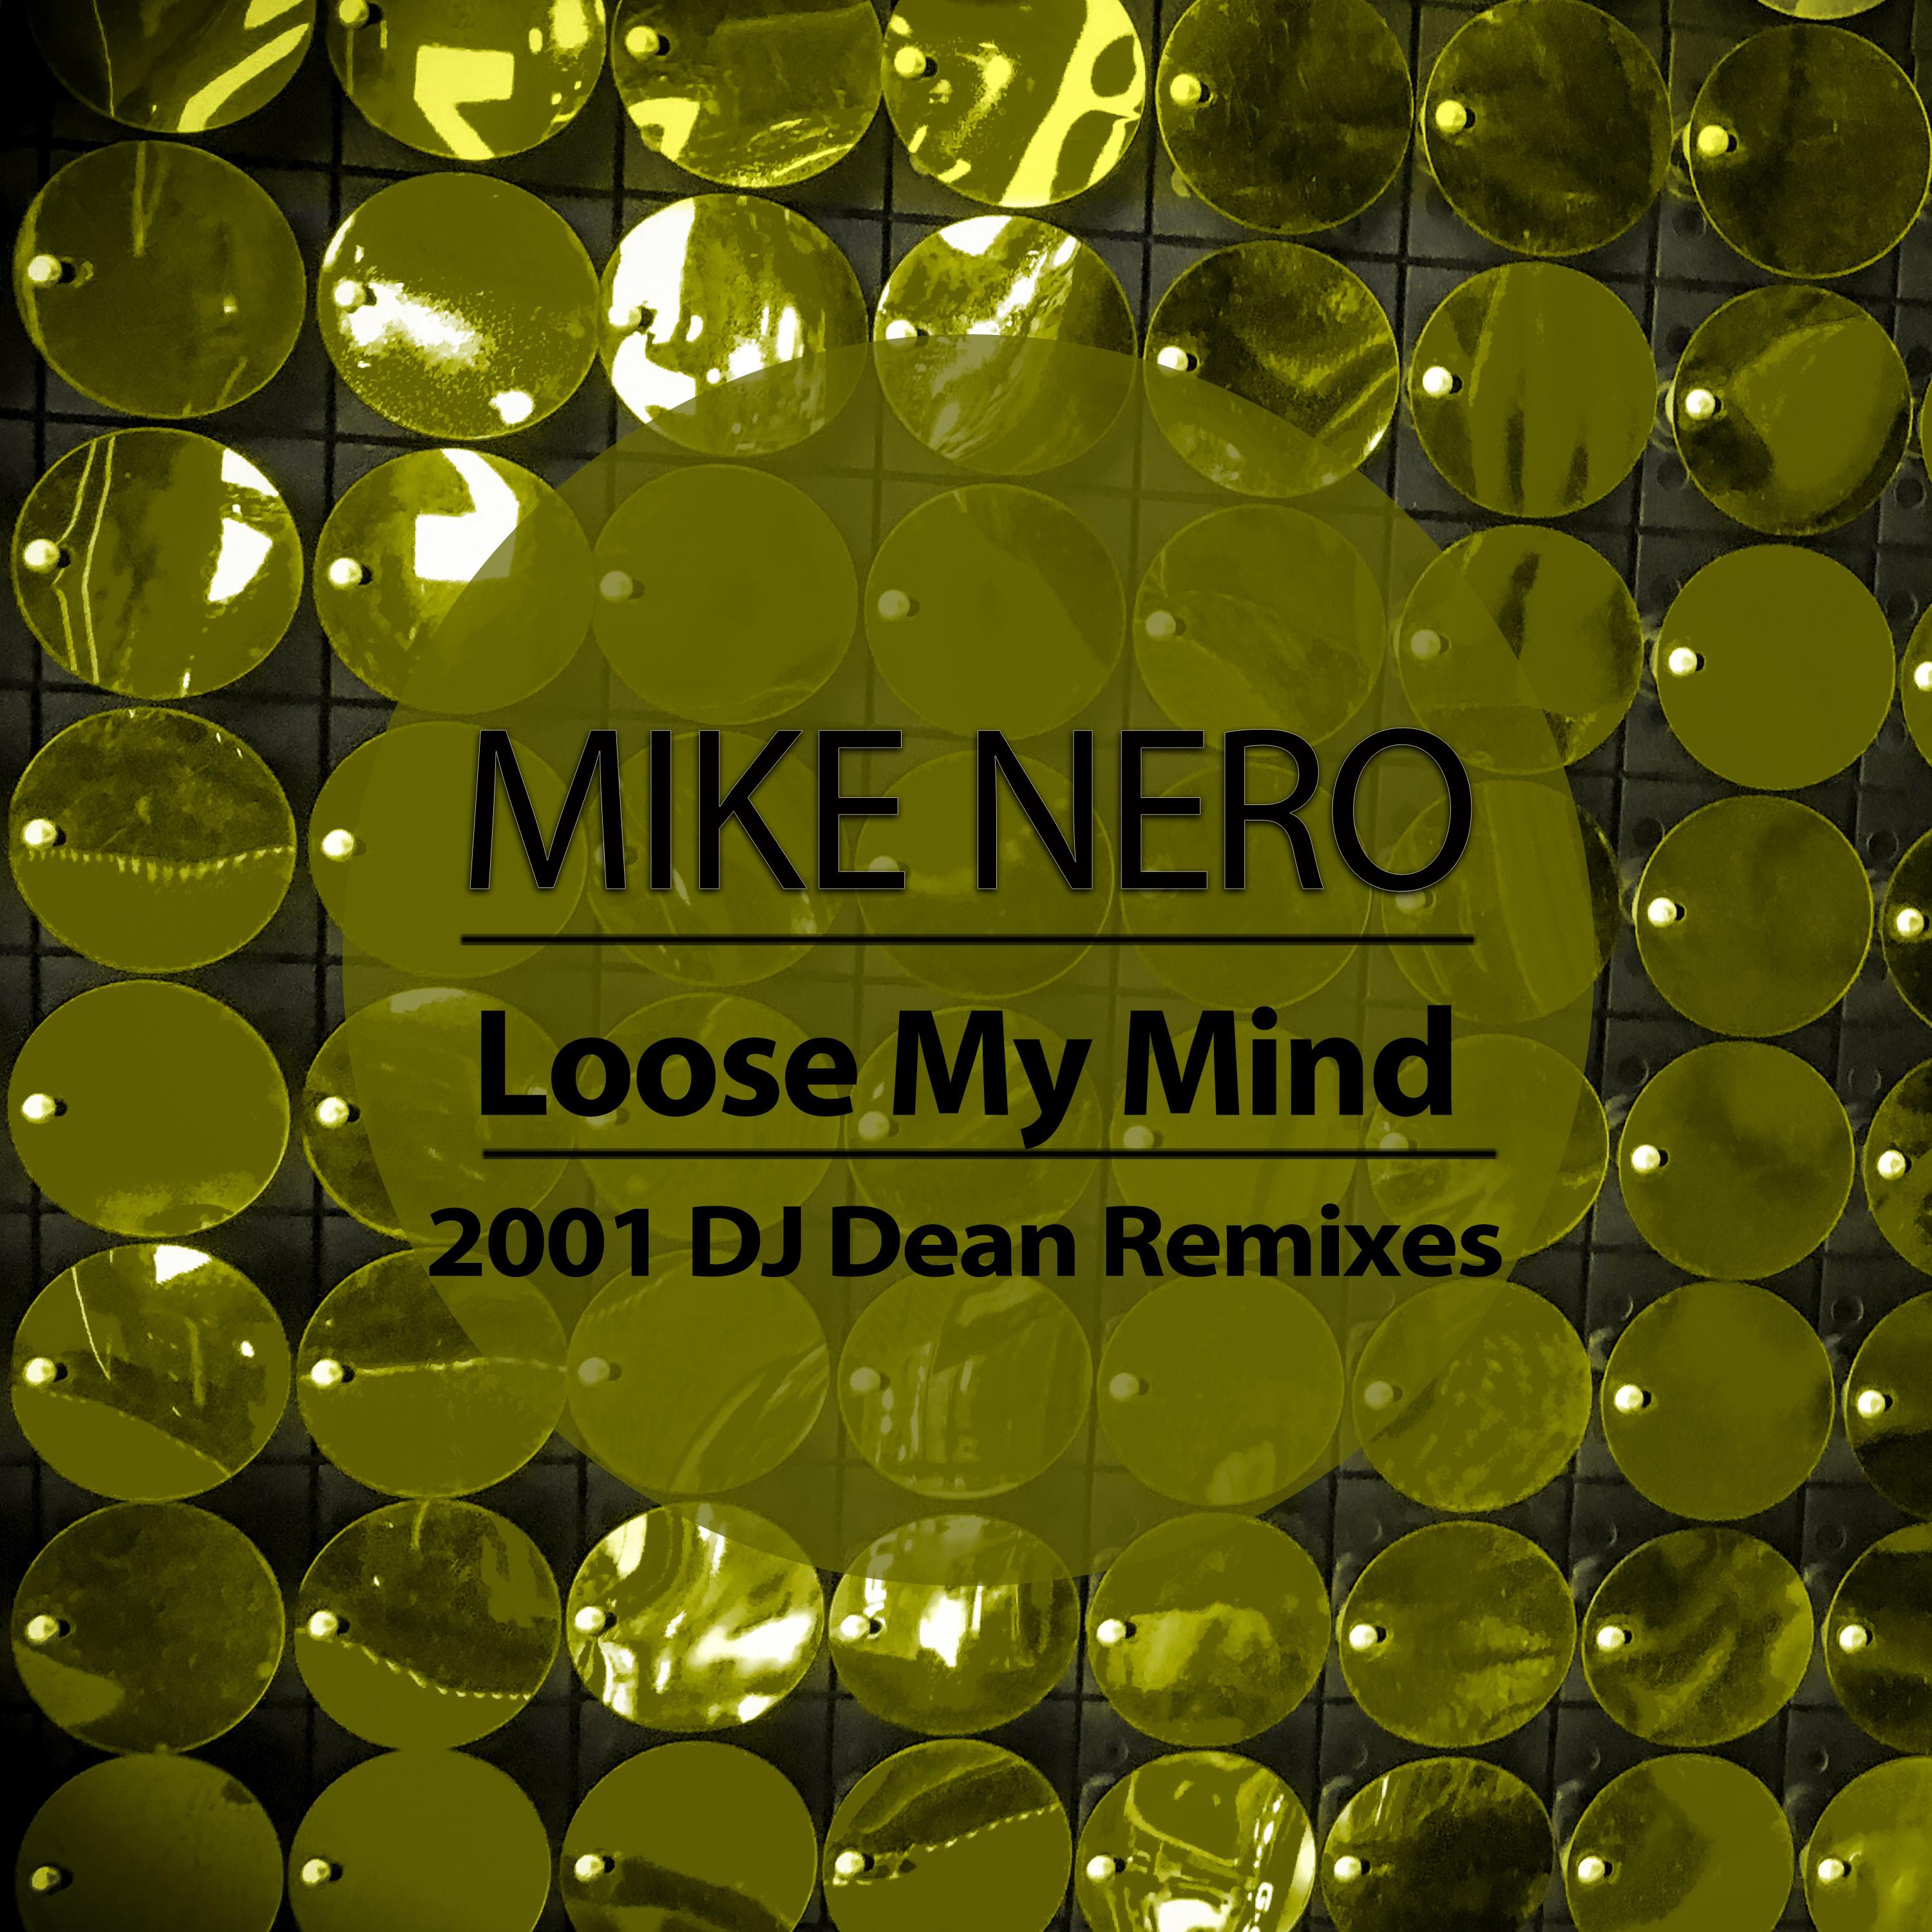 Loose My Mind (2001 DJ Dean Remix Edit)